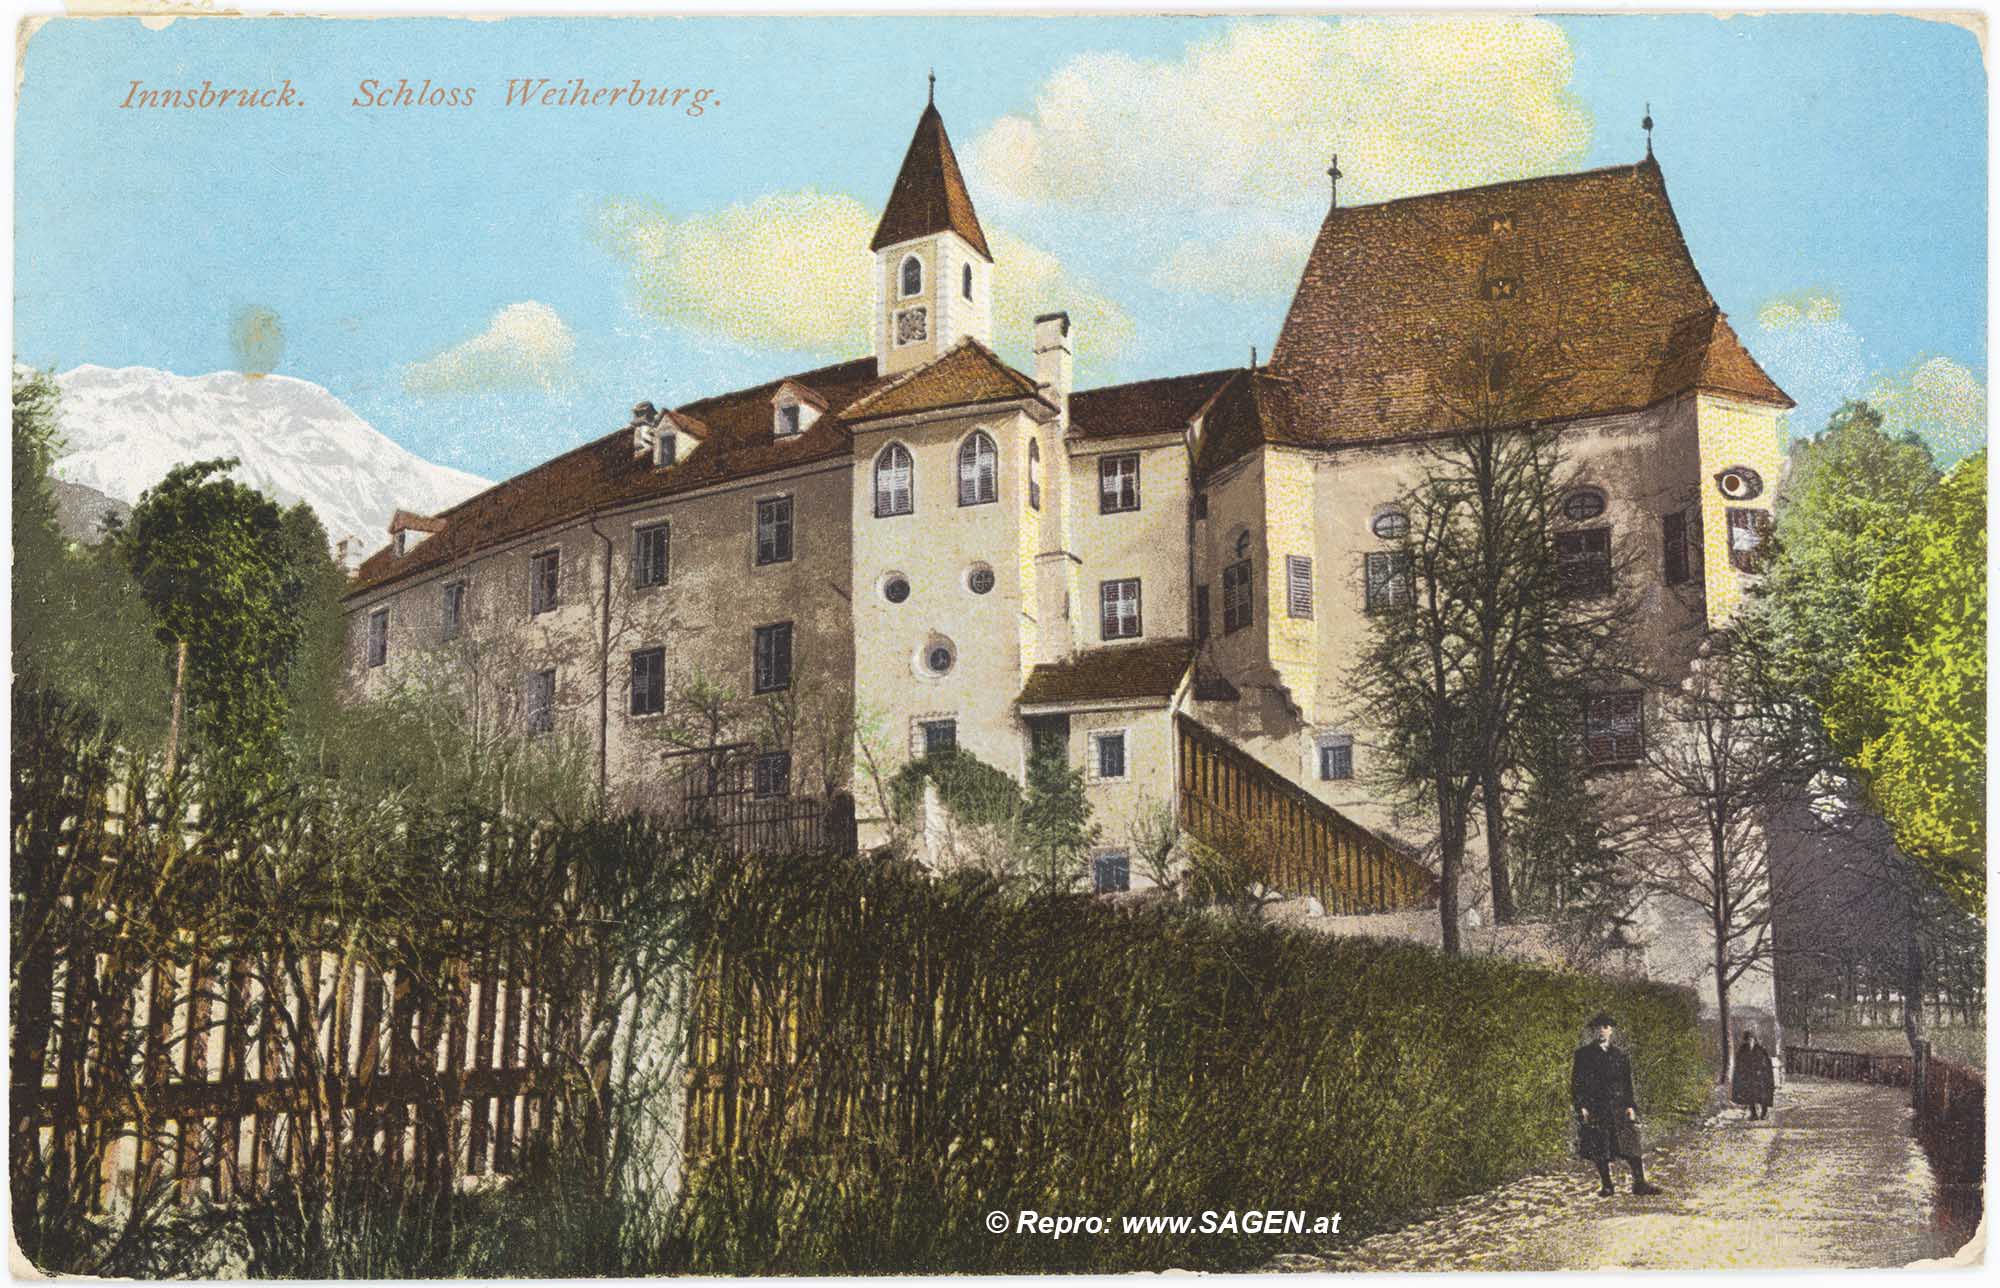 Innsbruck. Schloss Weiherburg.